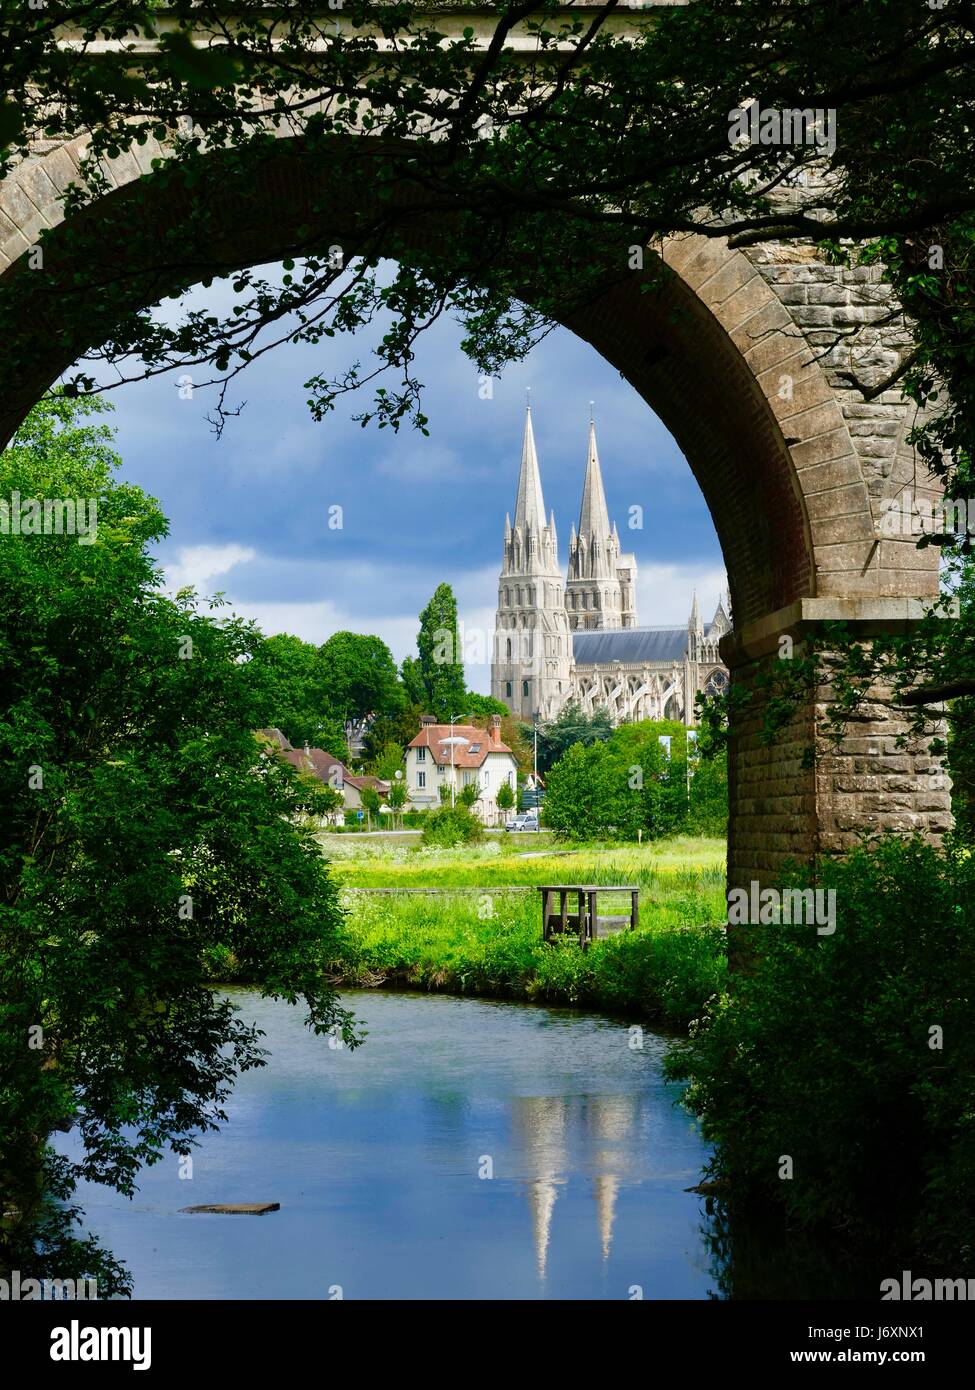 La cathédrale de Bayeux, Cathédrale Notre-Dame de Bayeux, vue à travers un chemin de pierre et chevalets dans toute la vallée de l'Aure marais, Bayeux, FR Banque D'Images